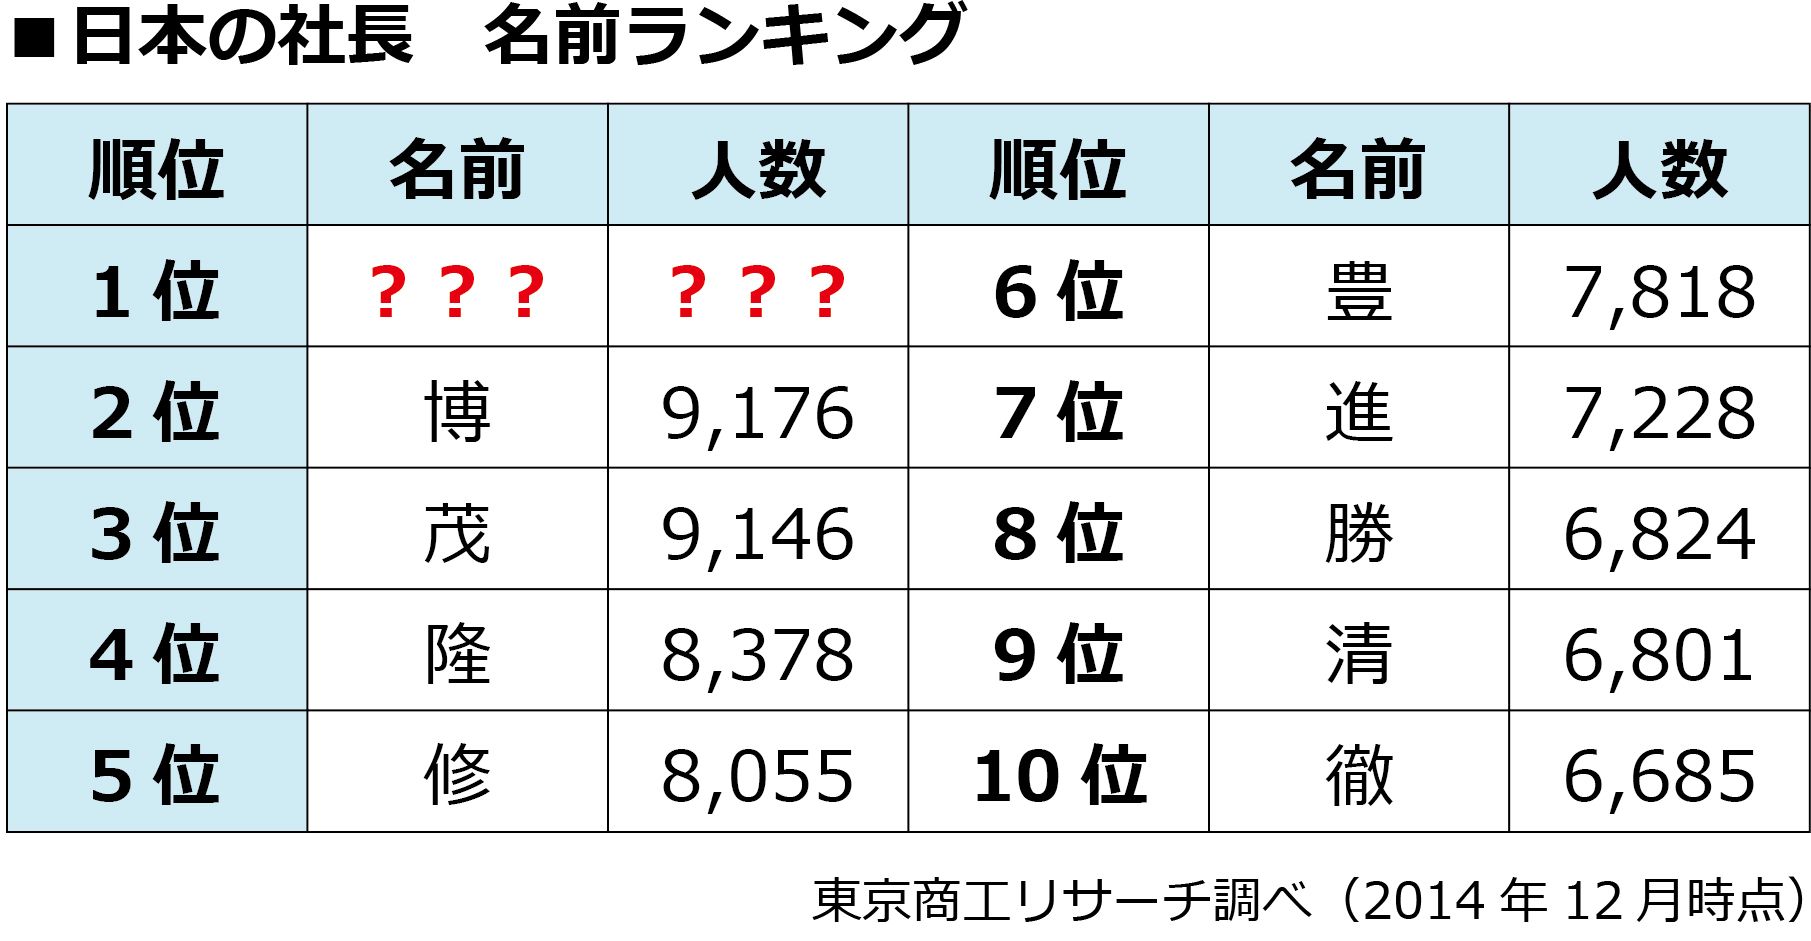 日本人が子どもに 翔 の名をつけたがる理由 テレビ 東洋経済オンライン 社会をよくする経済ニュース